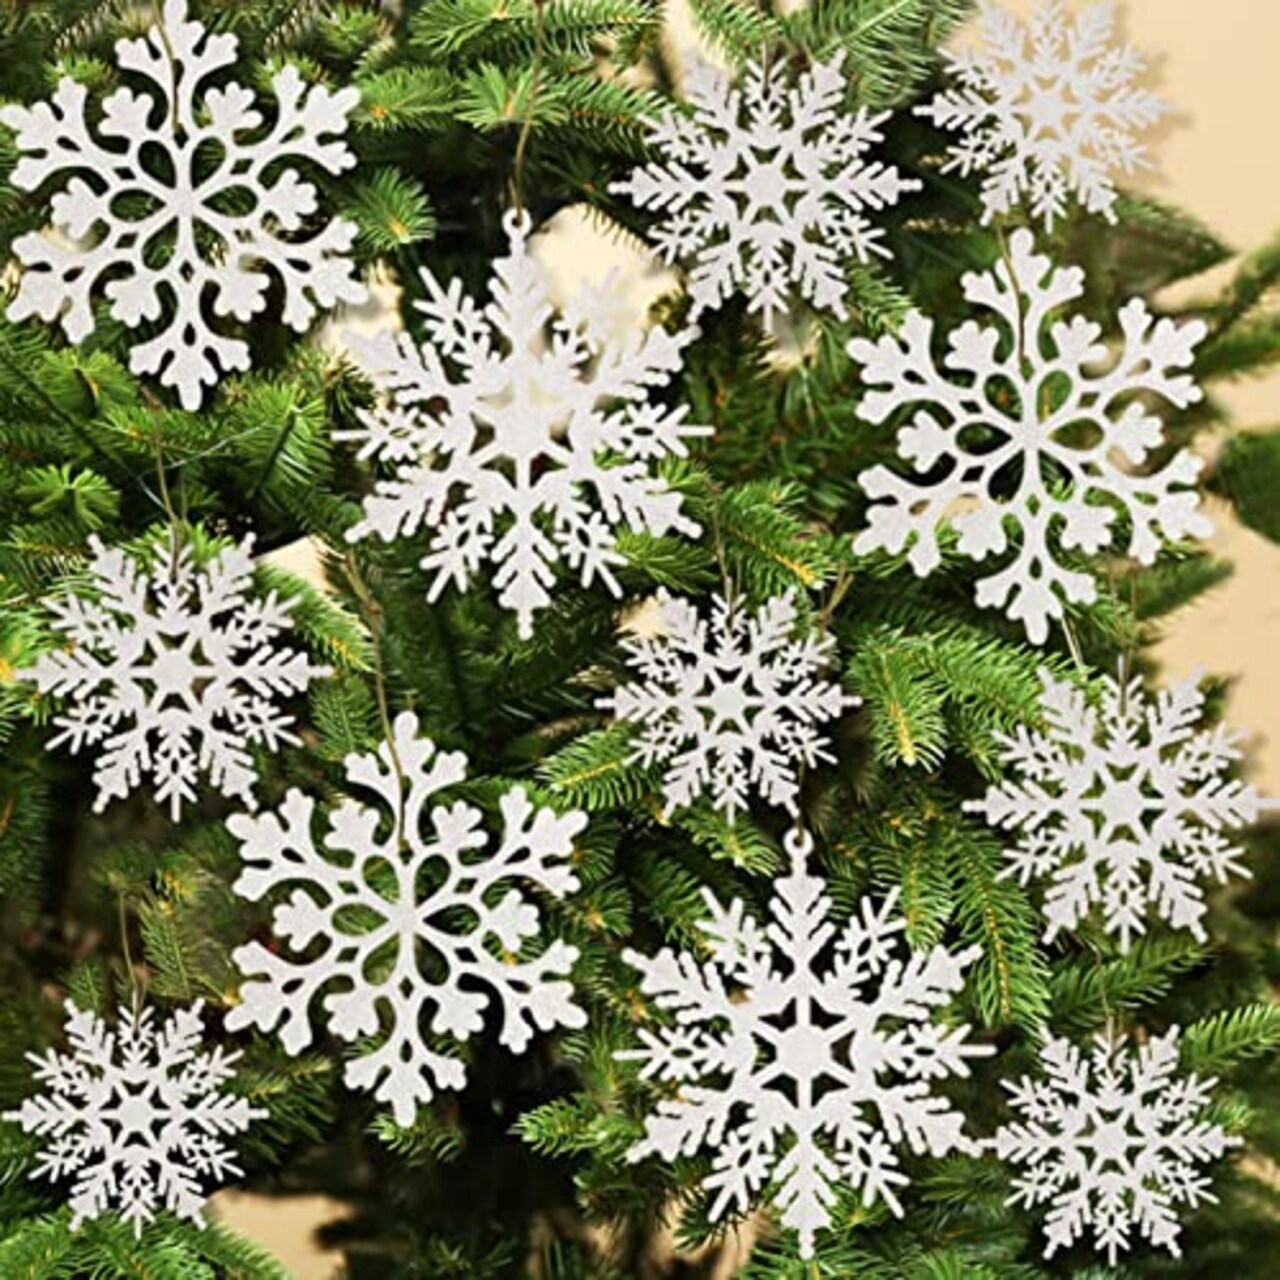 36pcs Christmas White Snowflake Ornaments Plastic Glitter Snow